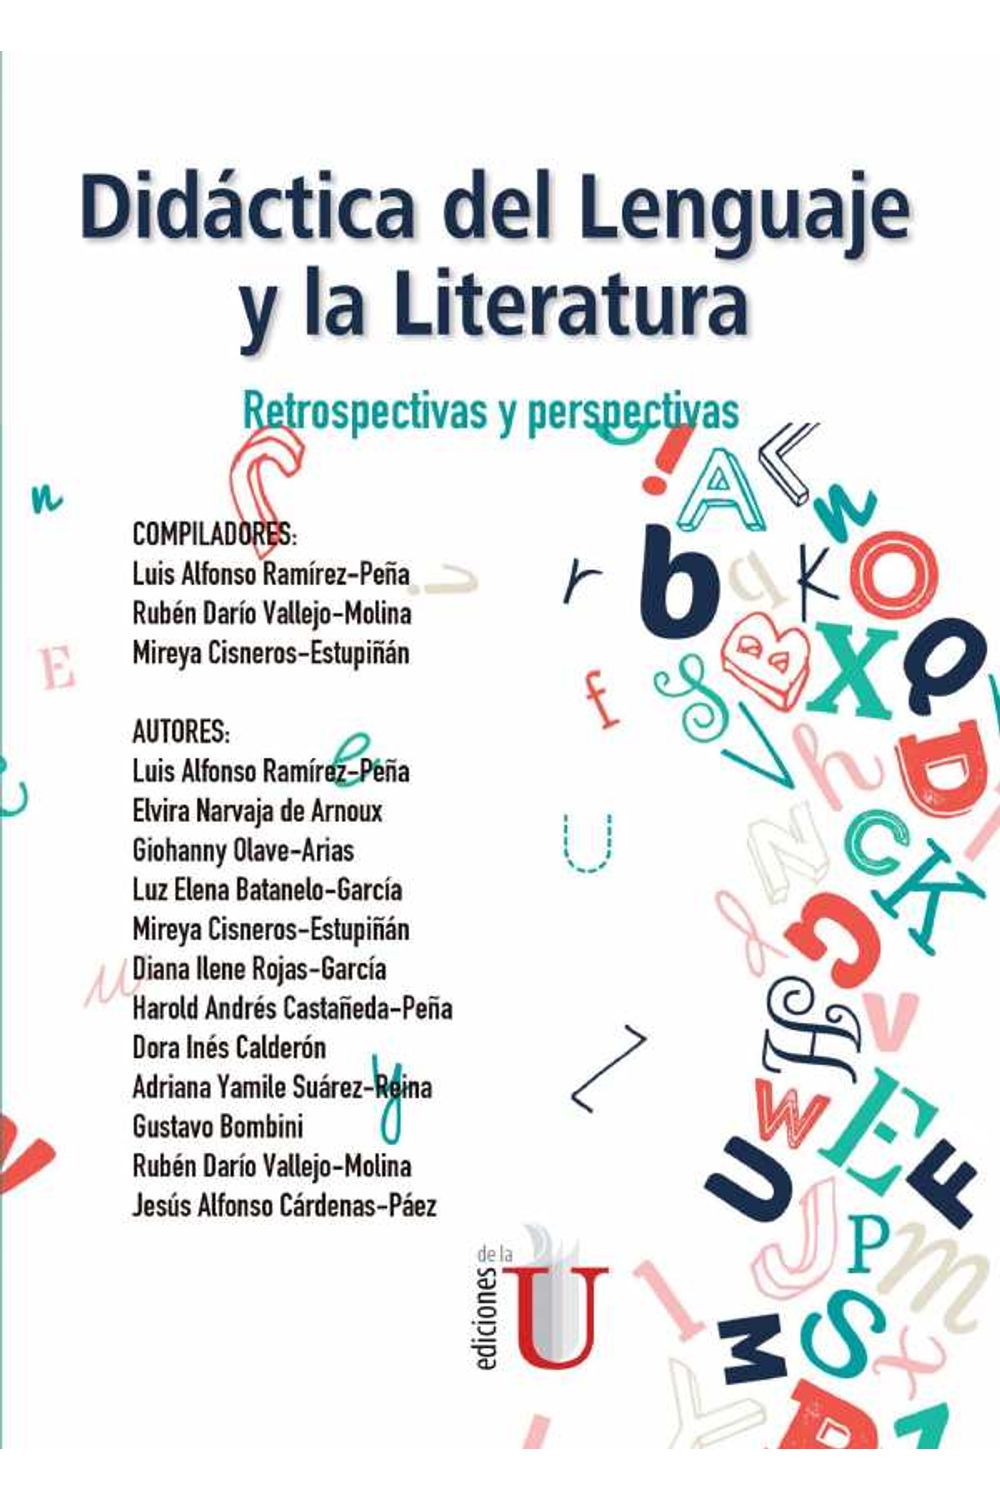 bw-didaacutectica-del-lenguaje-y-la-literatura-ediciones-de-la-u-9789587629385